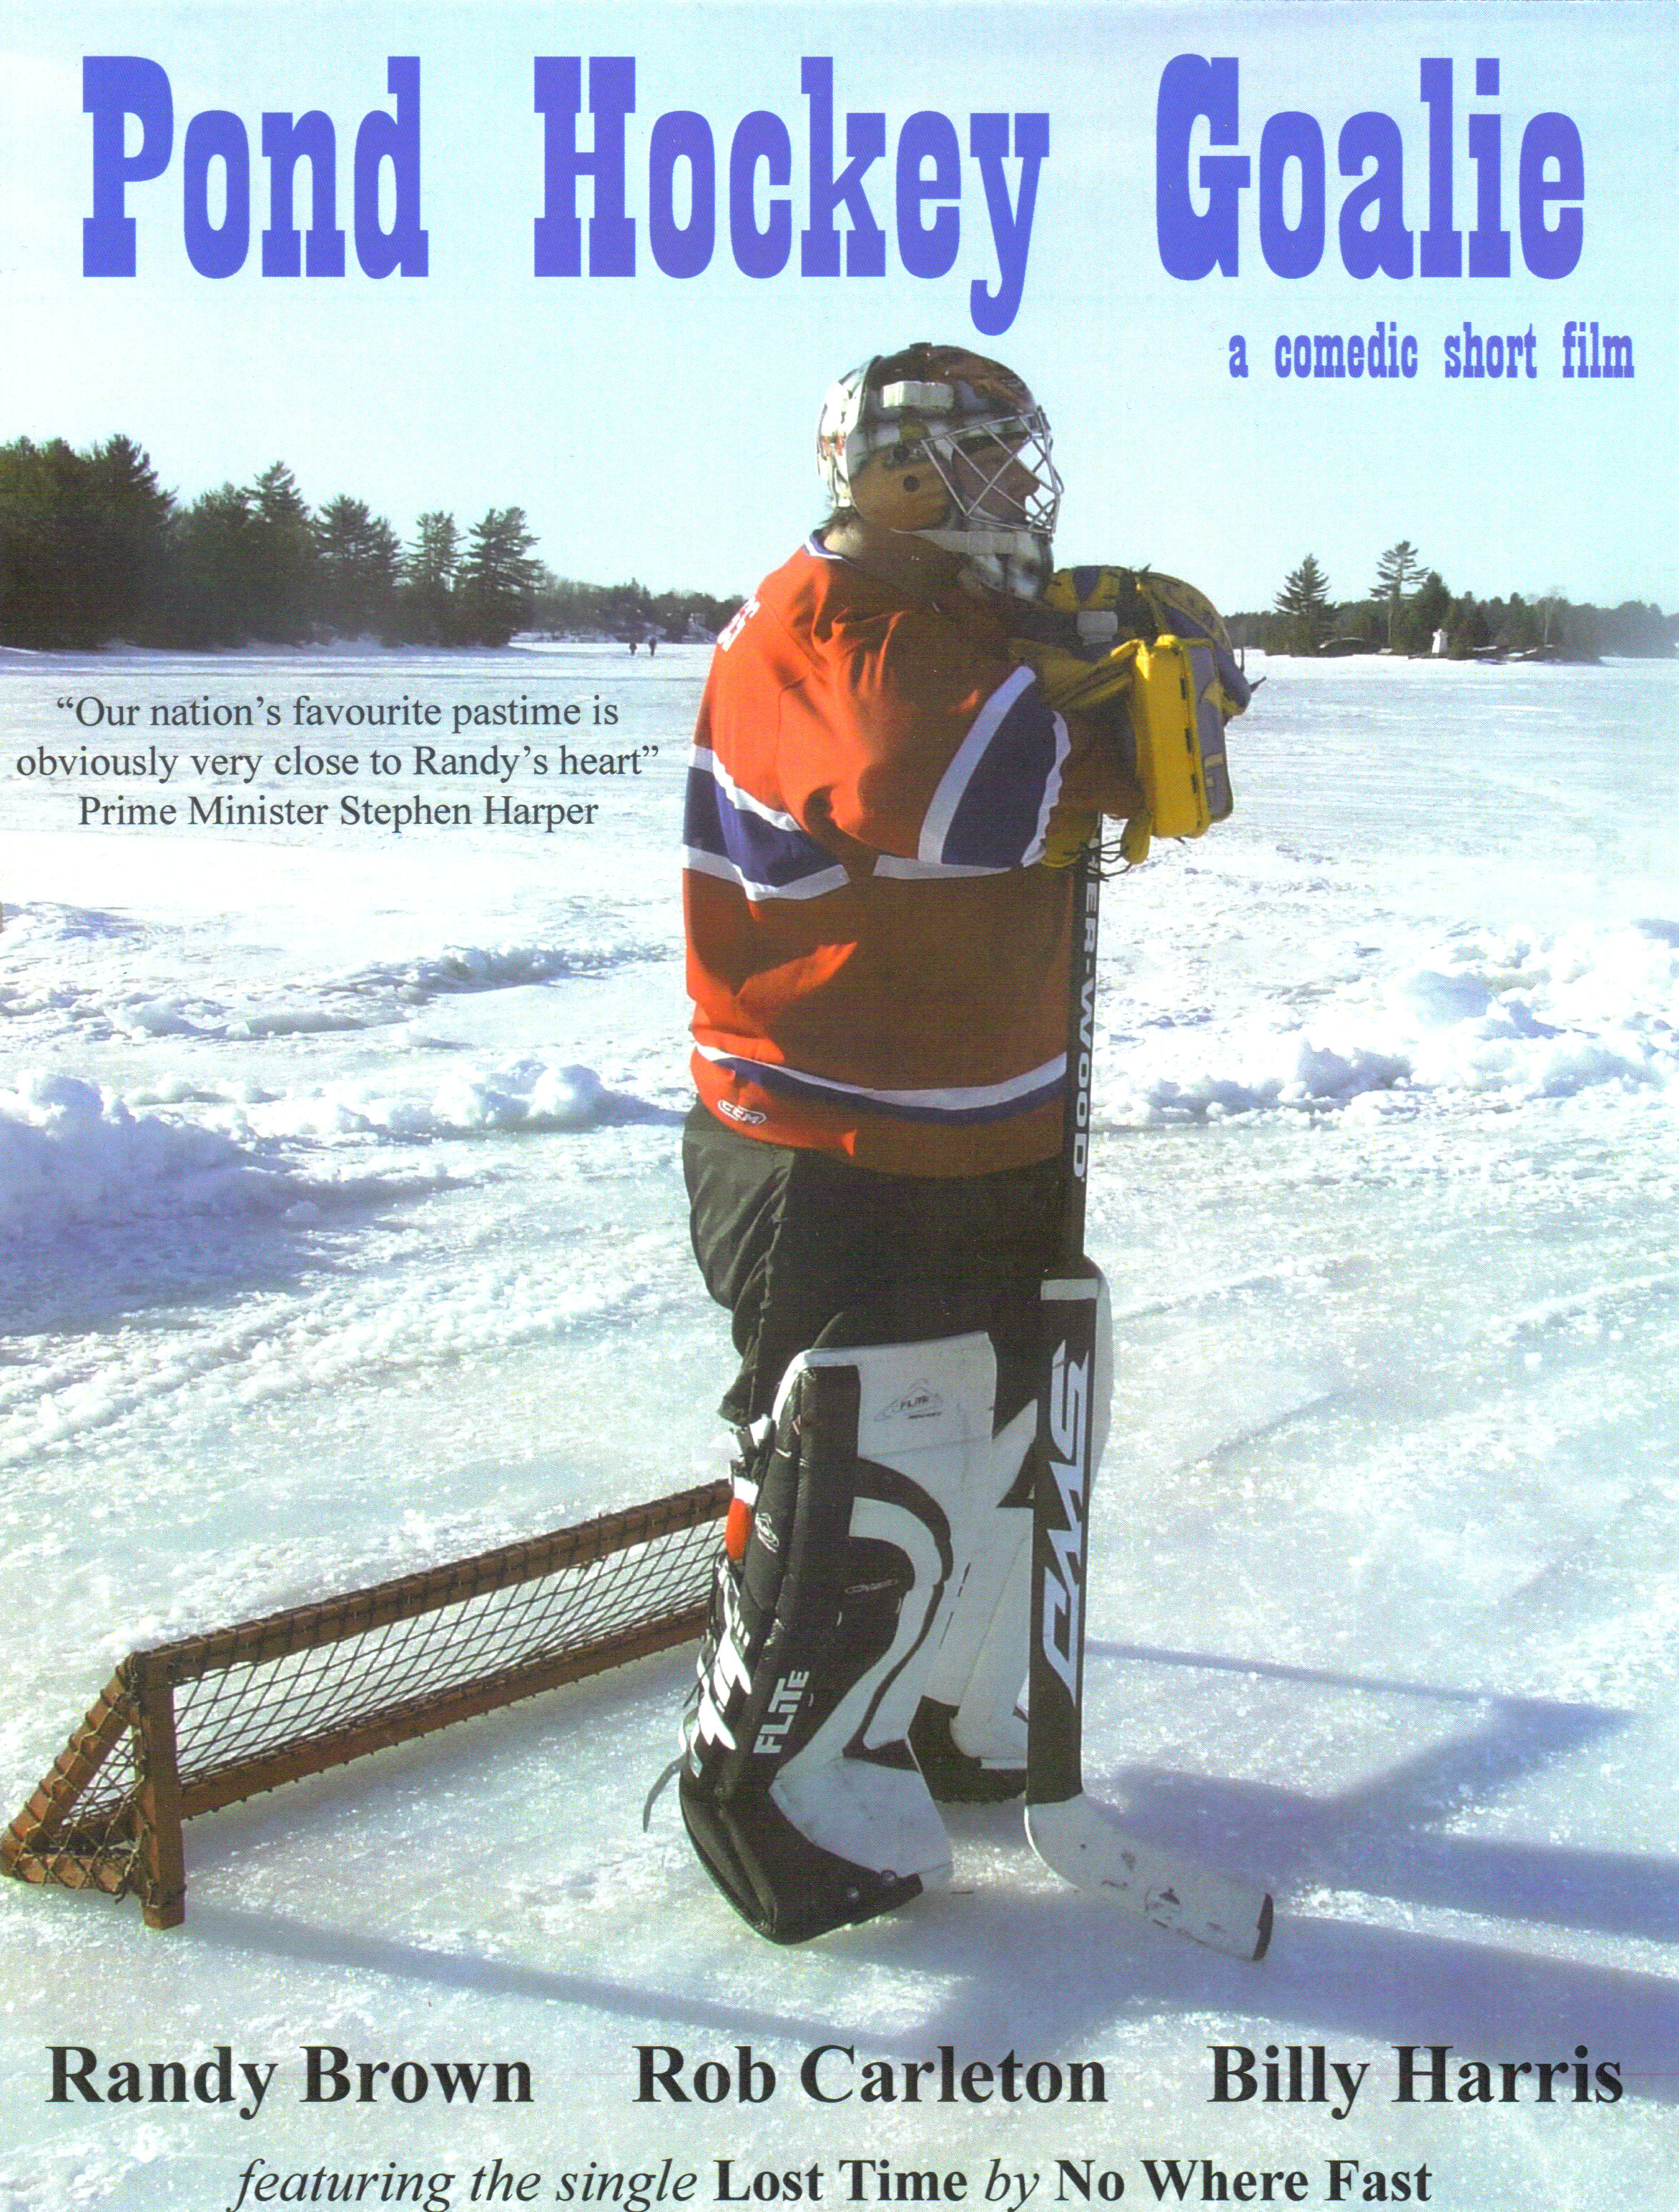 Randy Brown as Guy the Goalie in Pond Hockey Goalie